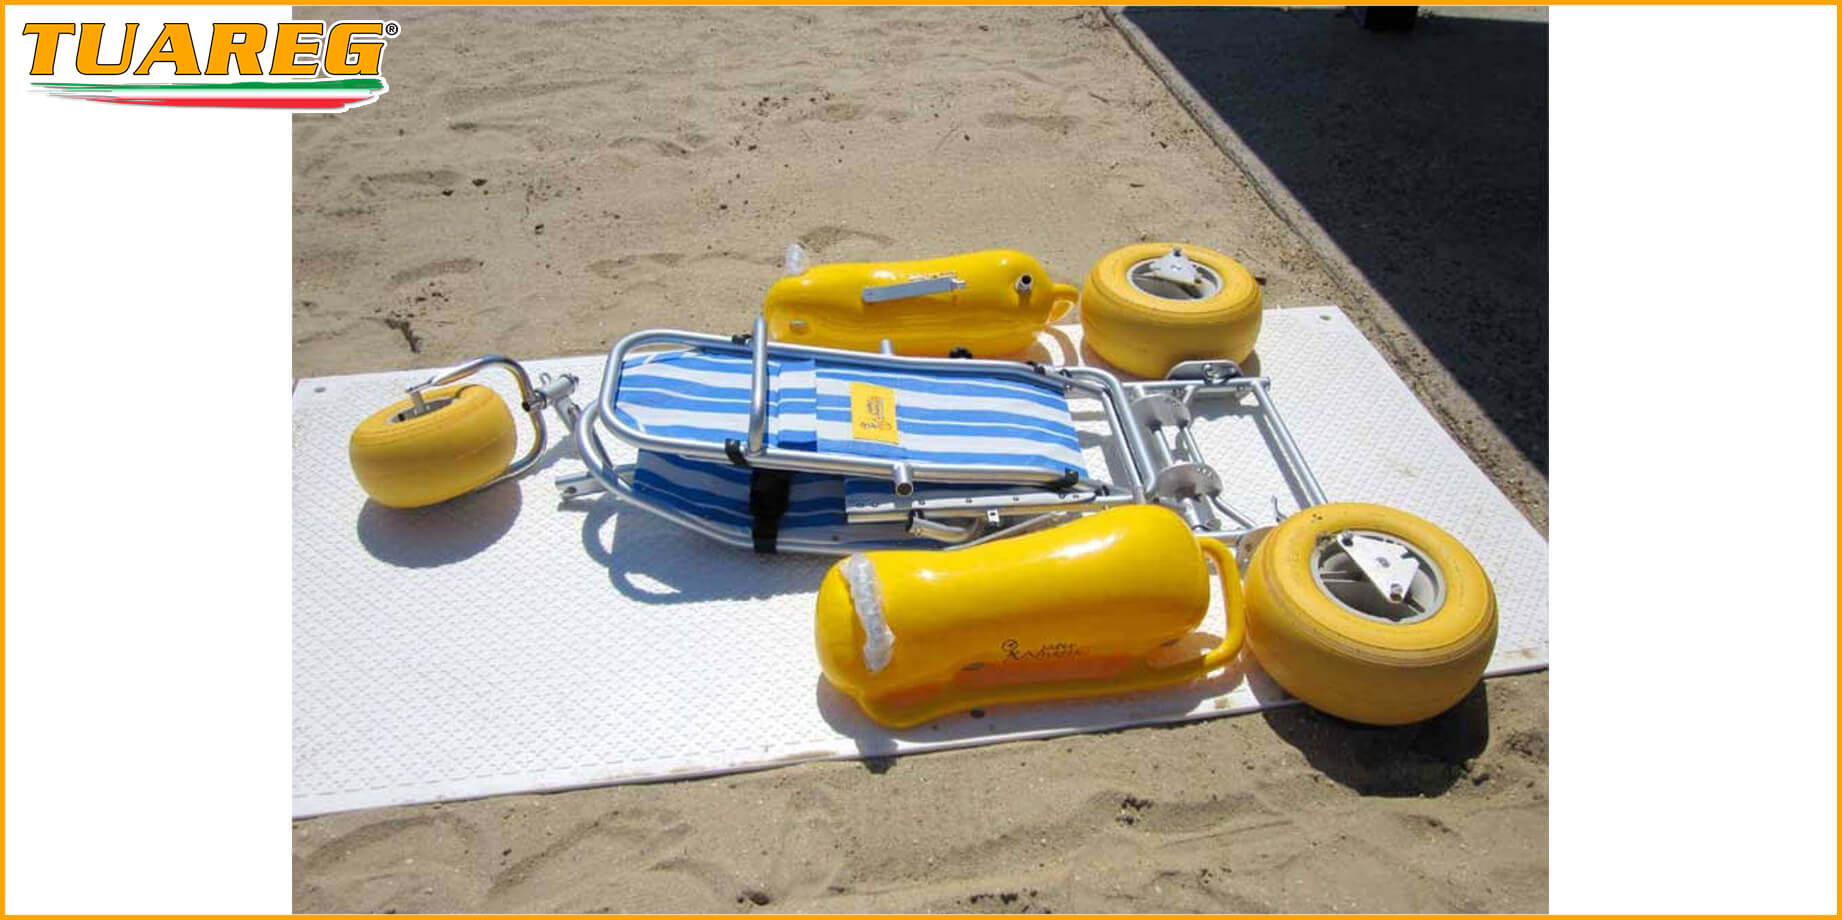 Silla Flotante de Playa para Discapacitados - Tuareg Access - Producto/Accesorio de Accesibilidad a la Playa